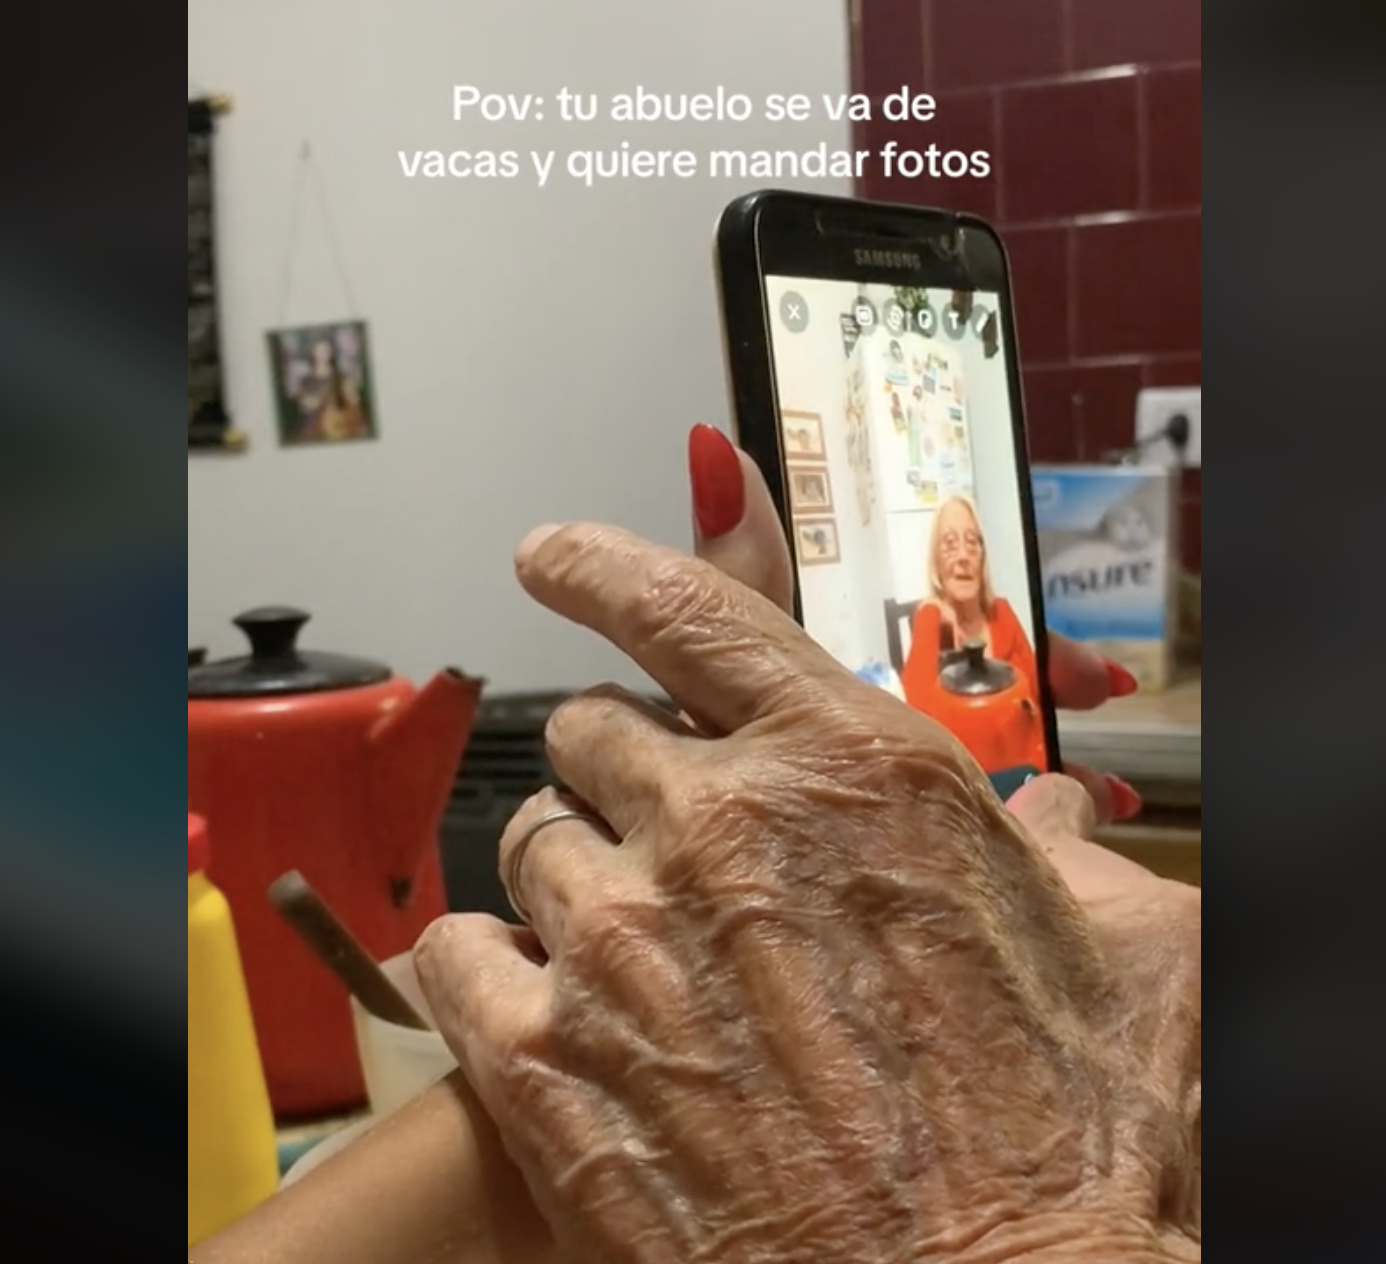 Le enseña a su abuelo a usar el móvil y su reacción se vuelve viral